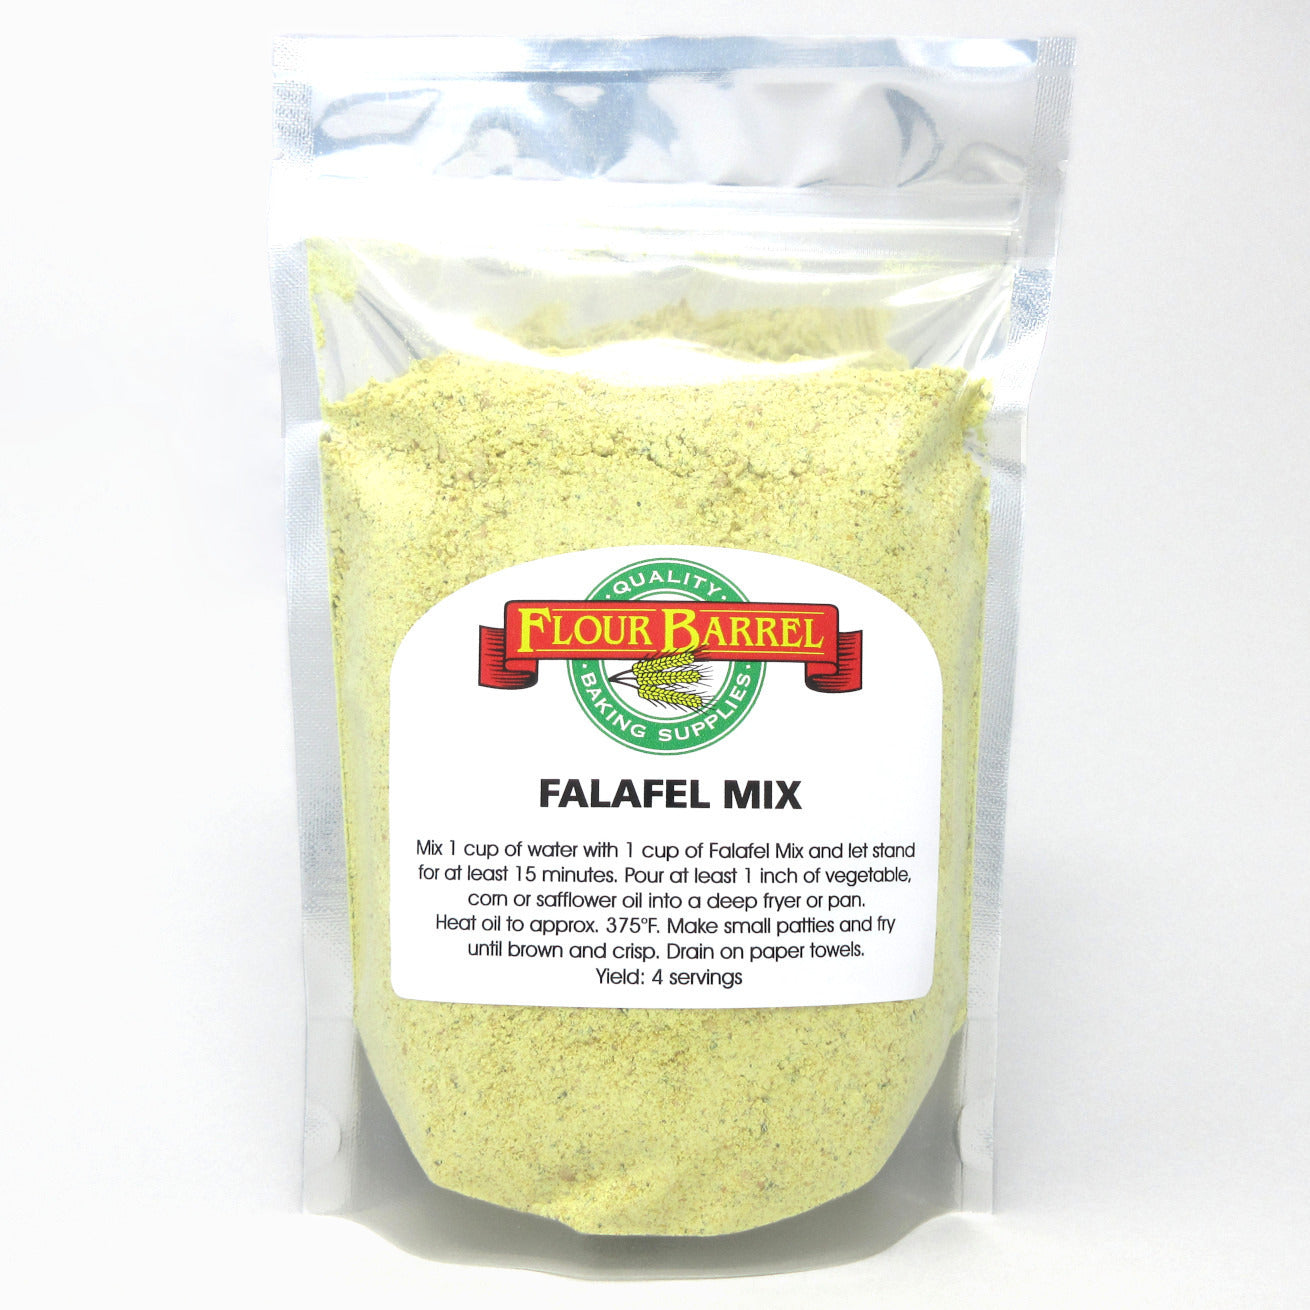 Flour Barrel product image - Falafel Mix